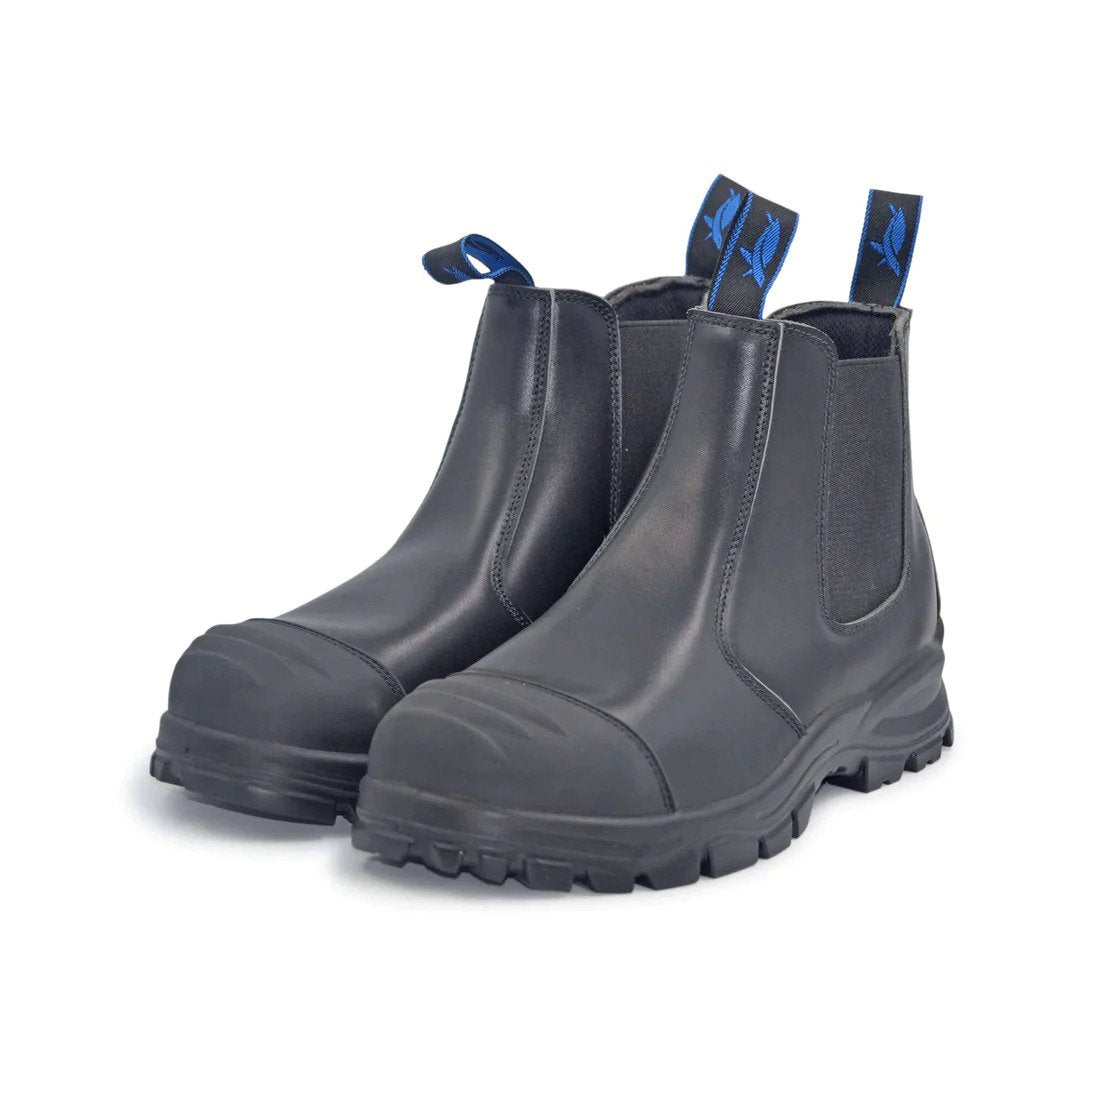 Work Boots nz | safety boots nz